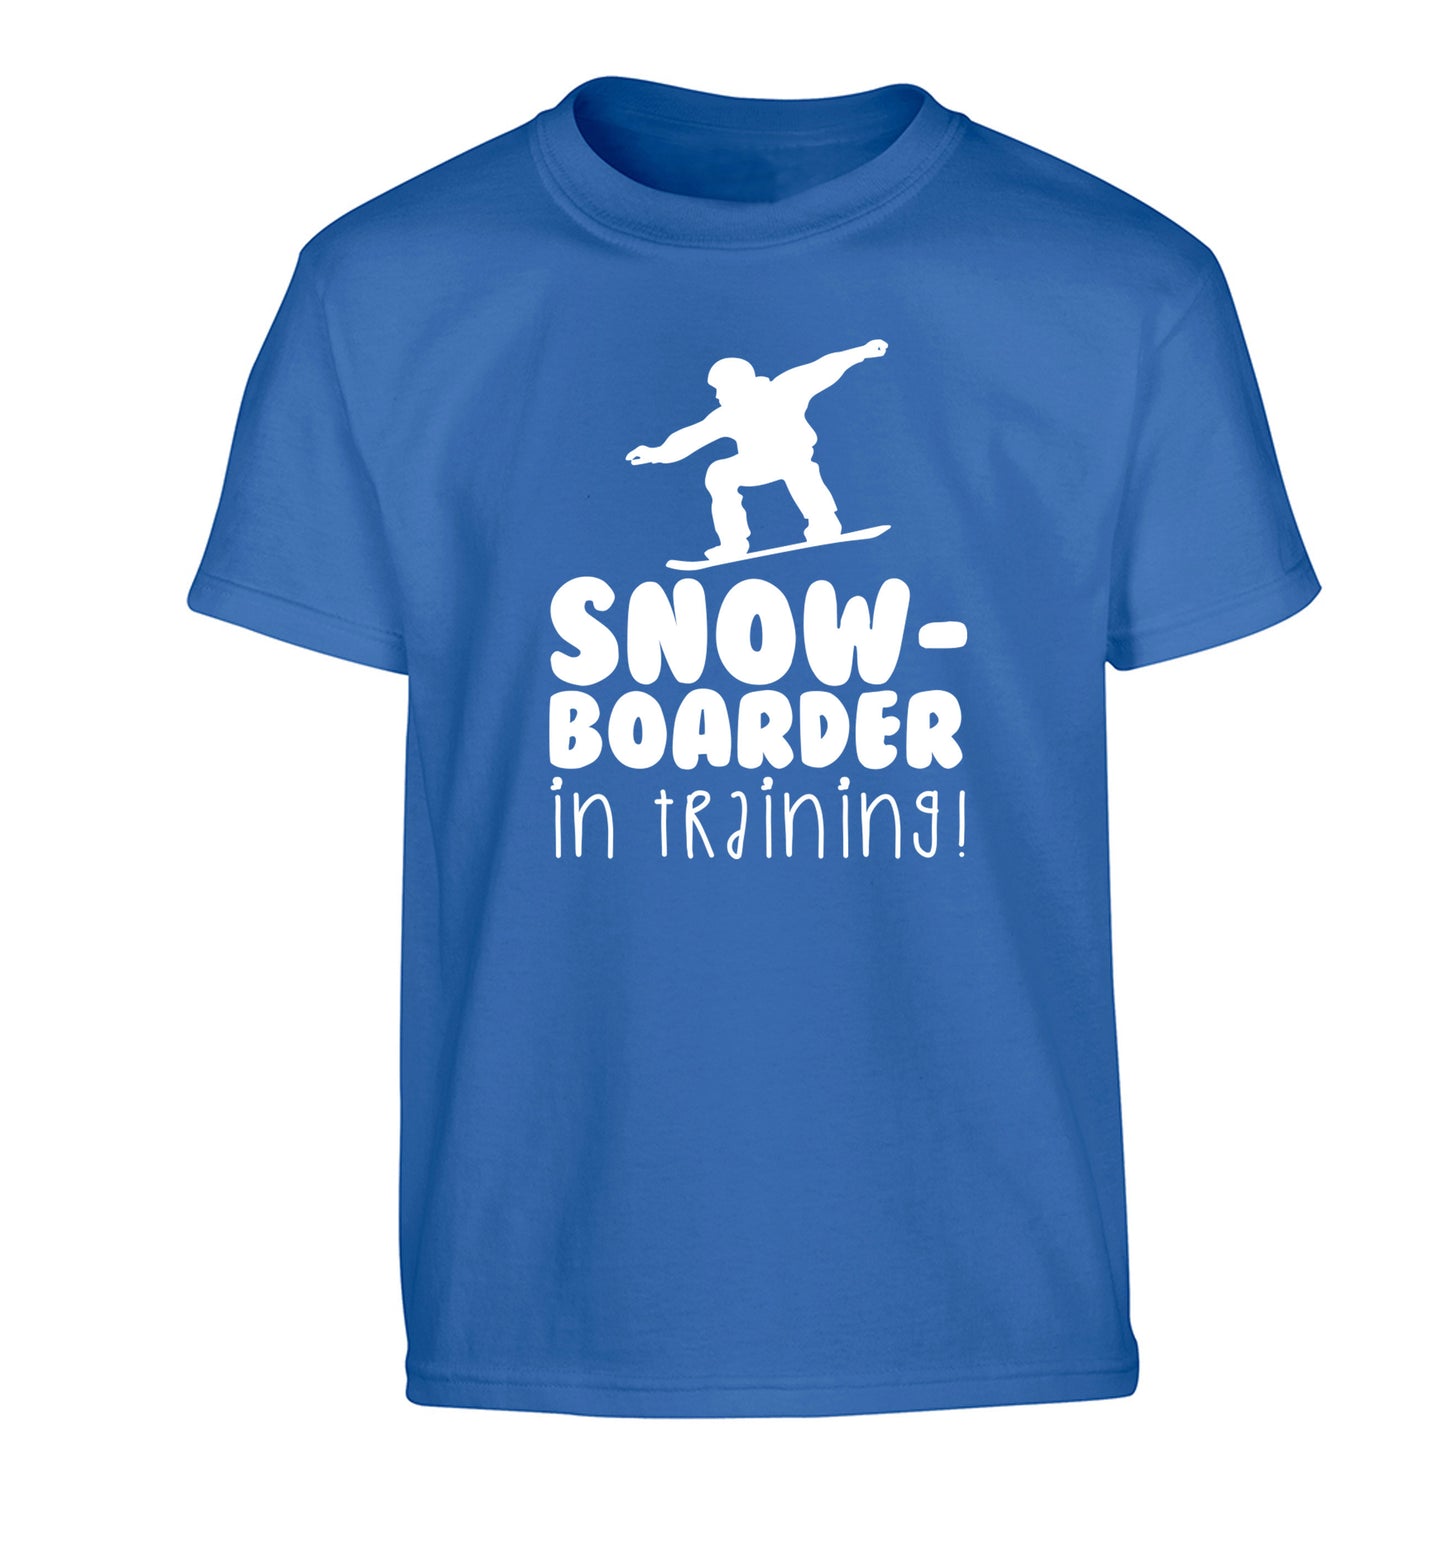 Snowboarder in training Children's blue Tshirt 12-14 Years